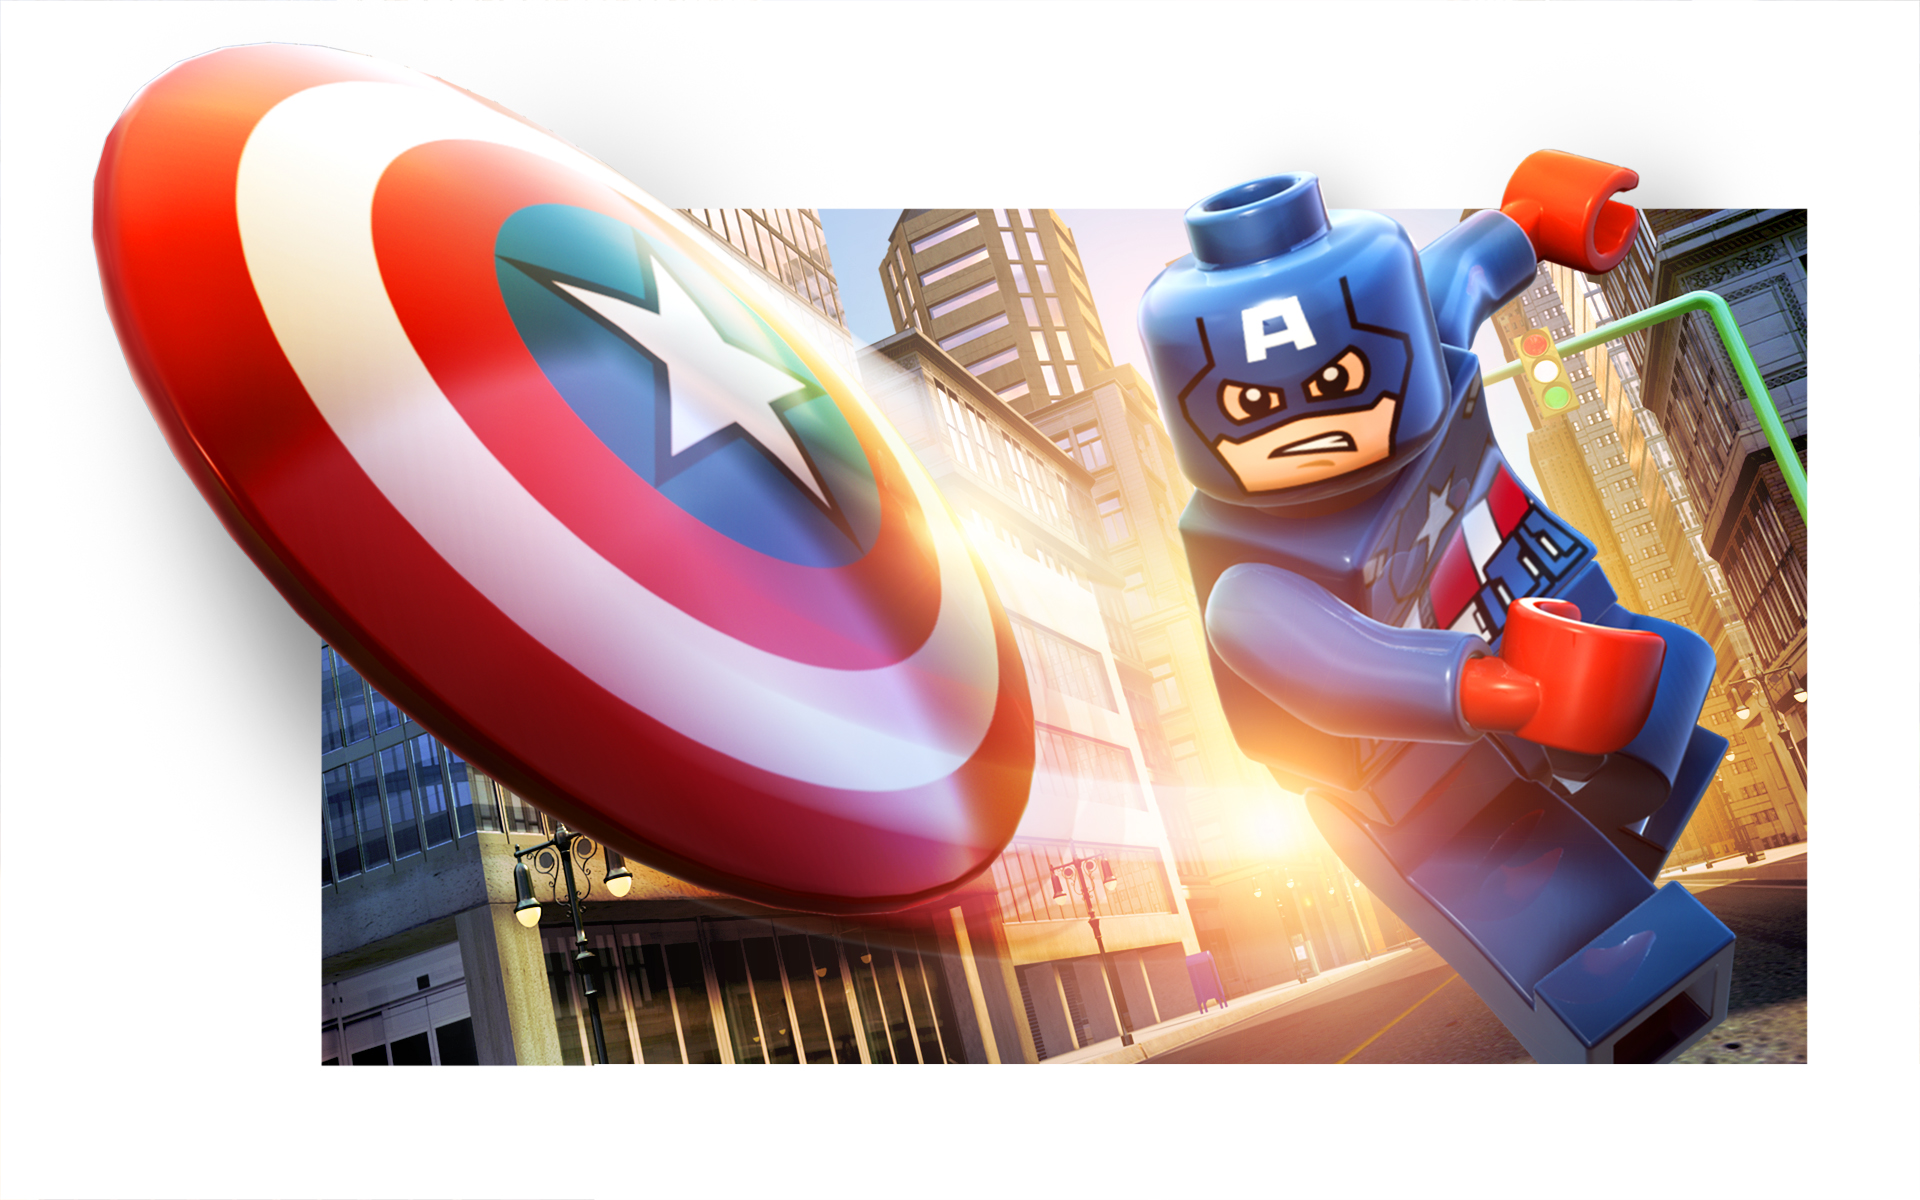 download lego marvel super heroes 3